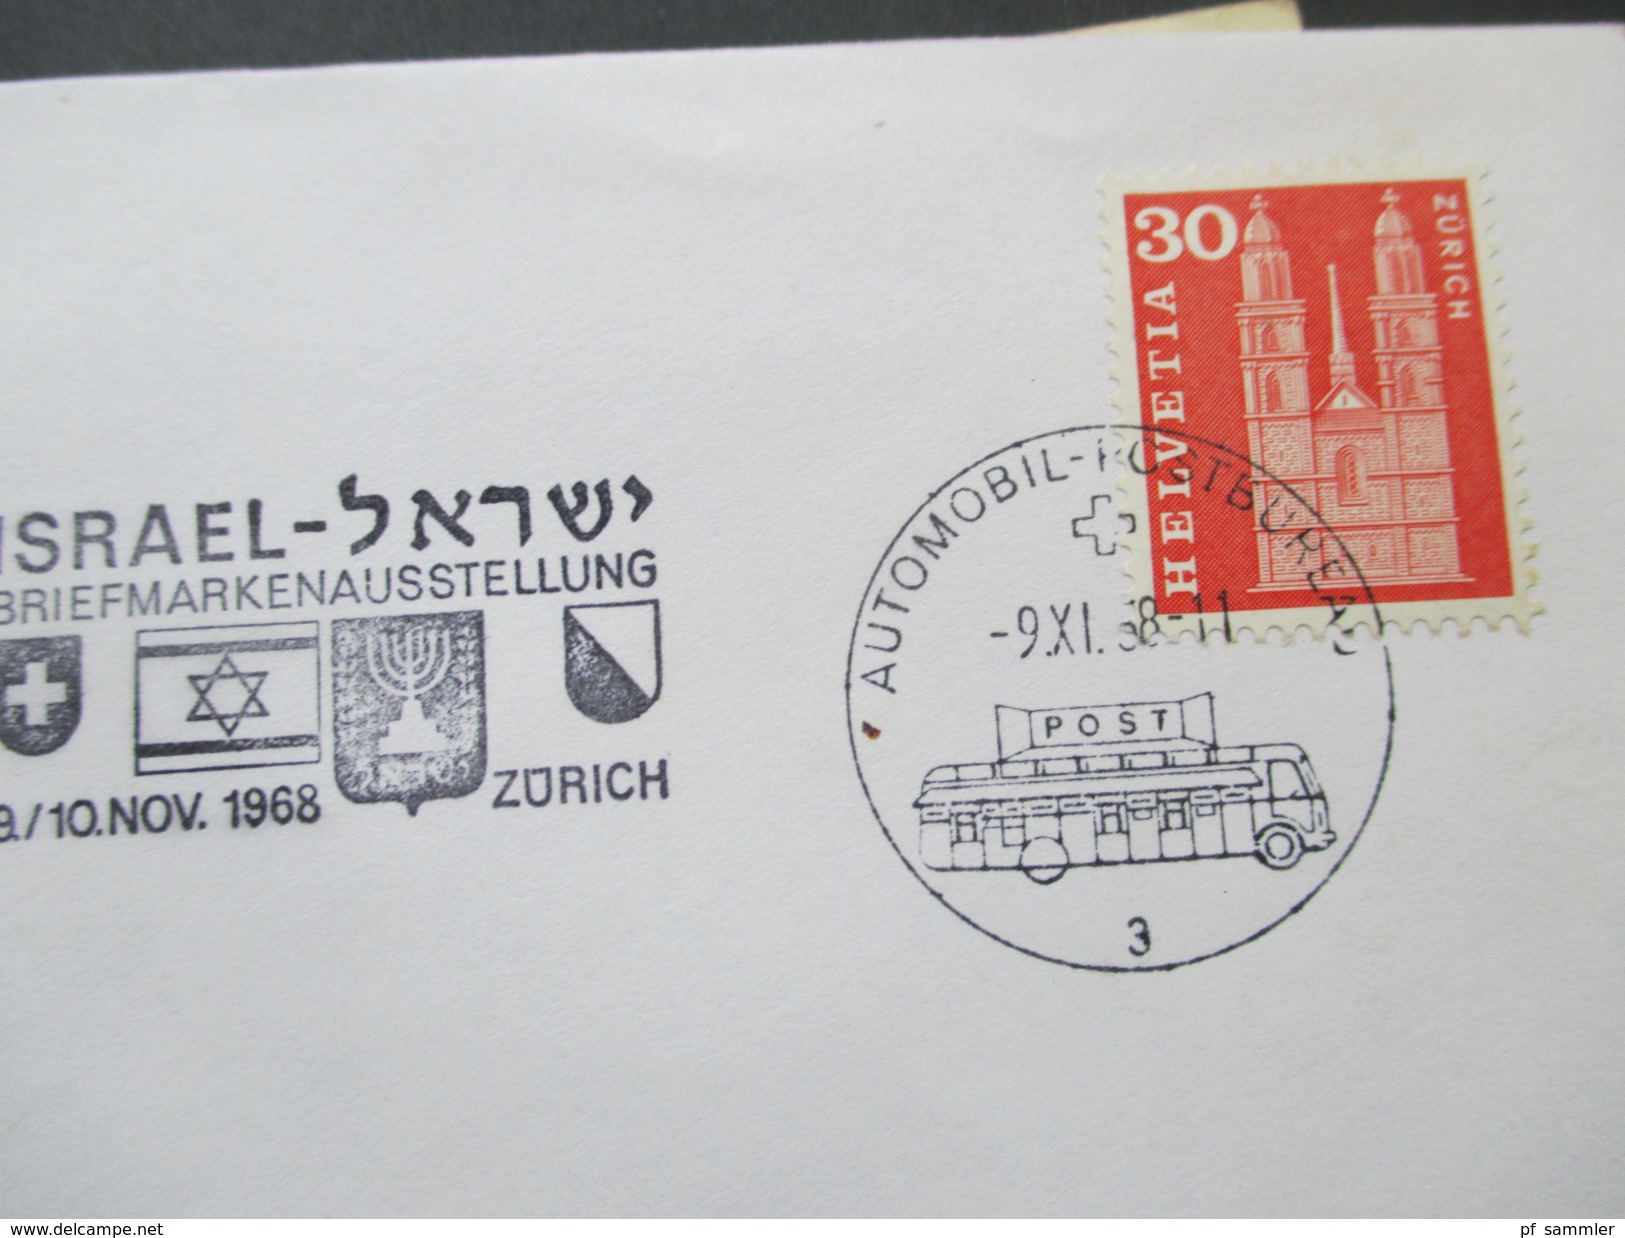 Israel / Holy Land 1940/50er Belegeposten 31 Stück! Judaika / Randstücke / Tab / FDC / Luftpost / Bogennummern usw.